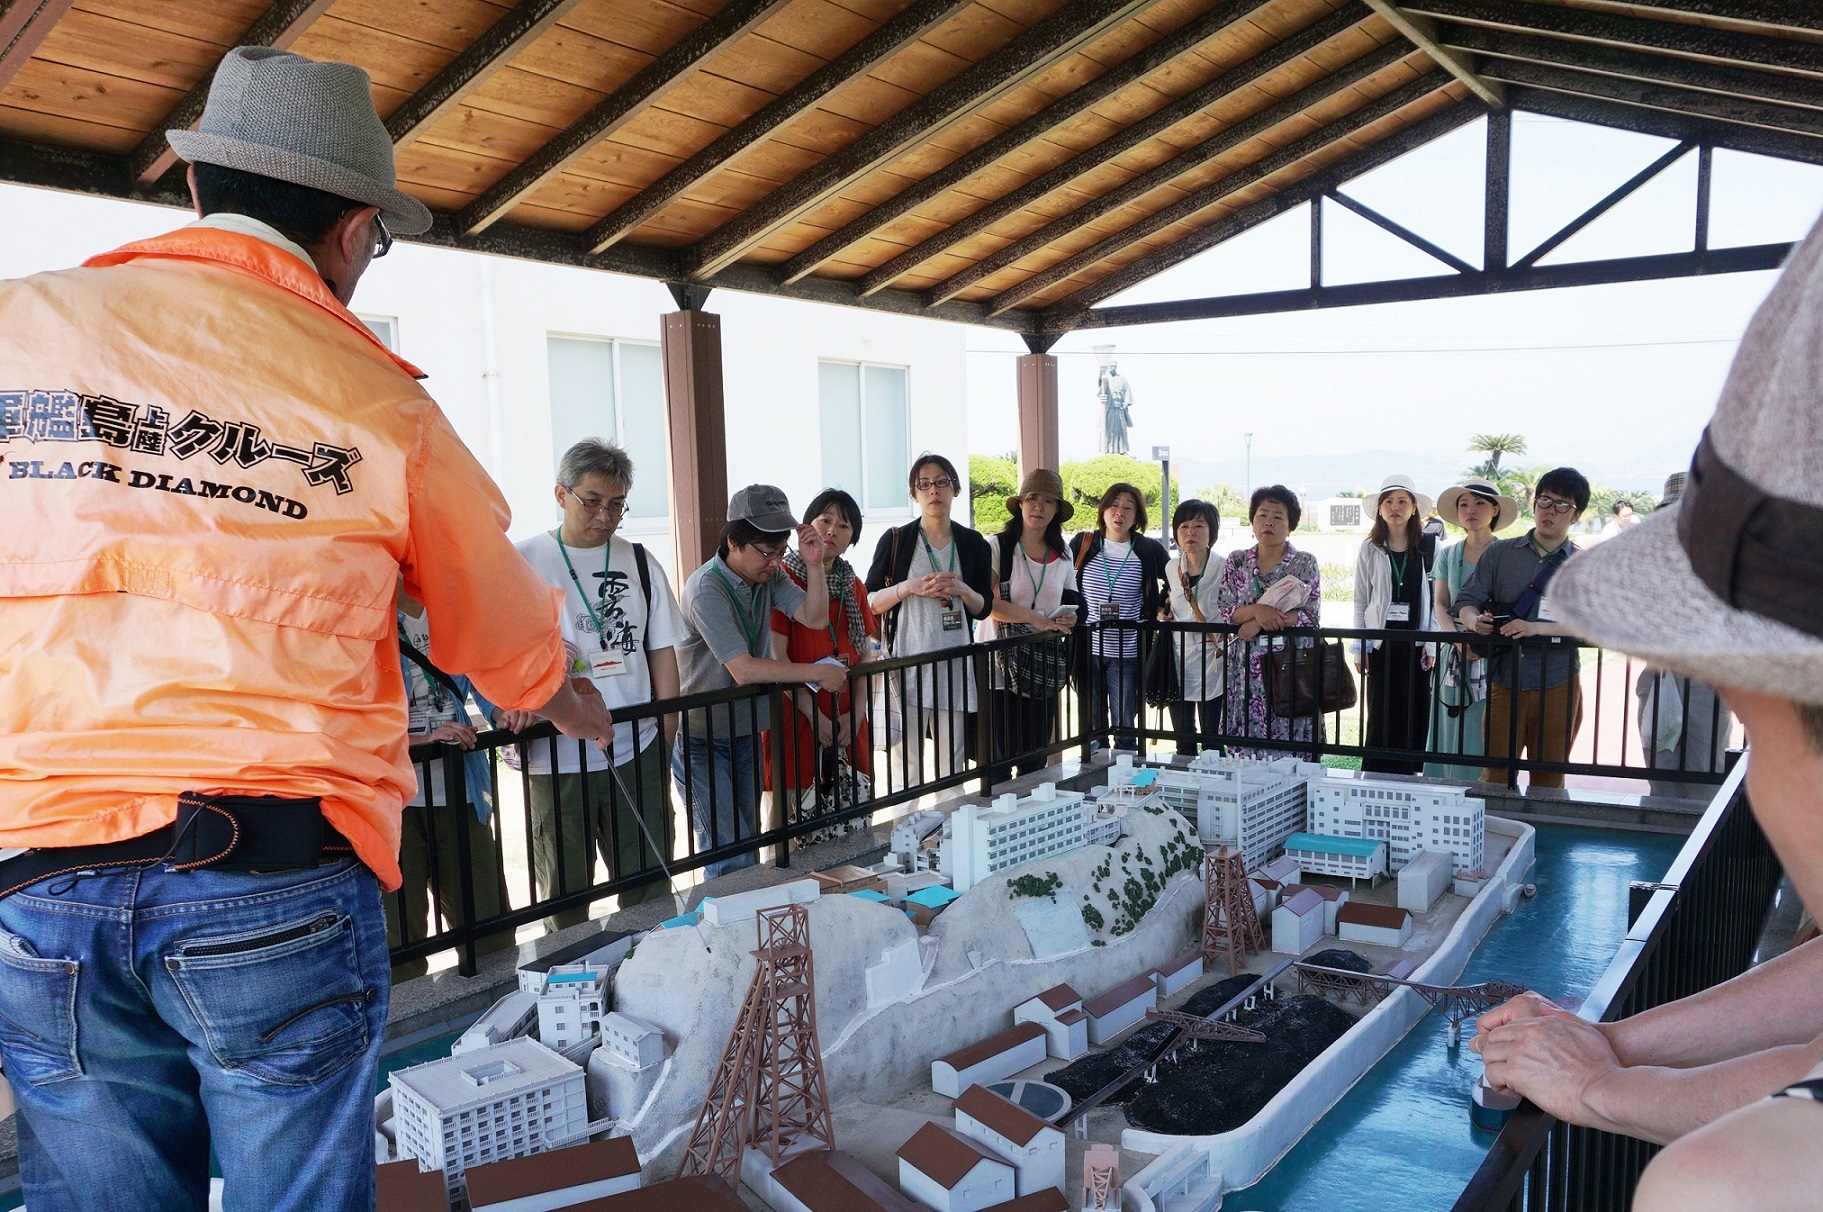 다카시마 석탄자료관의 하시마 모형 앞에서 설명을 듣고 있는 많은 관광객들. 유네스코 문화유산 등재후 현재 관광섬으로만 부각되고 있는 모습이다.